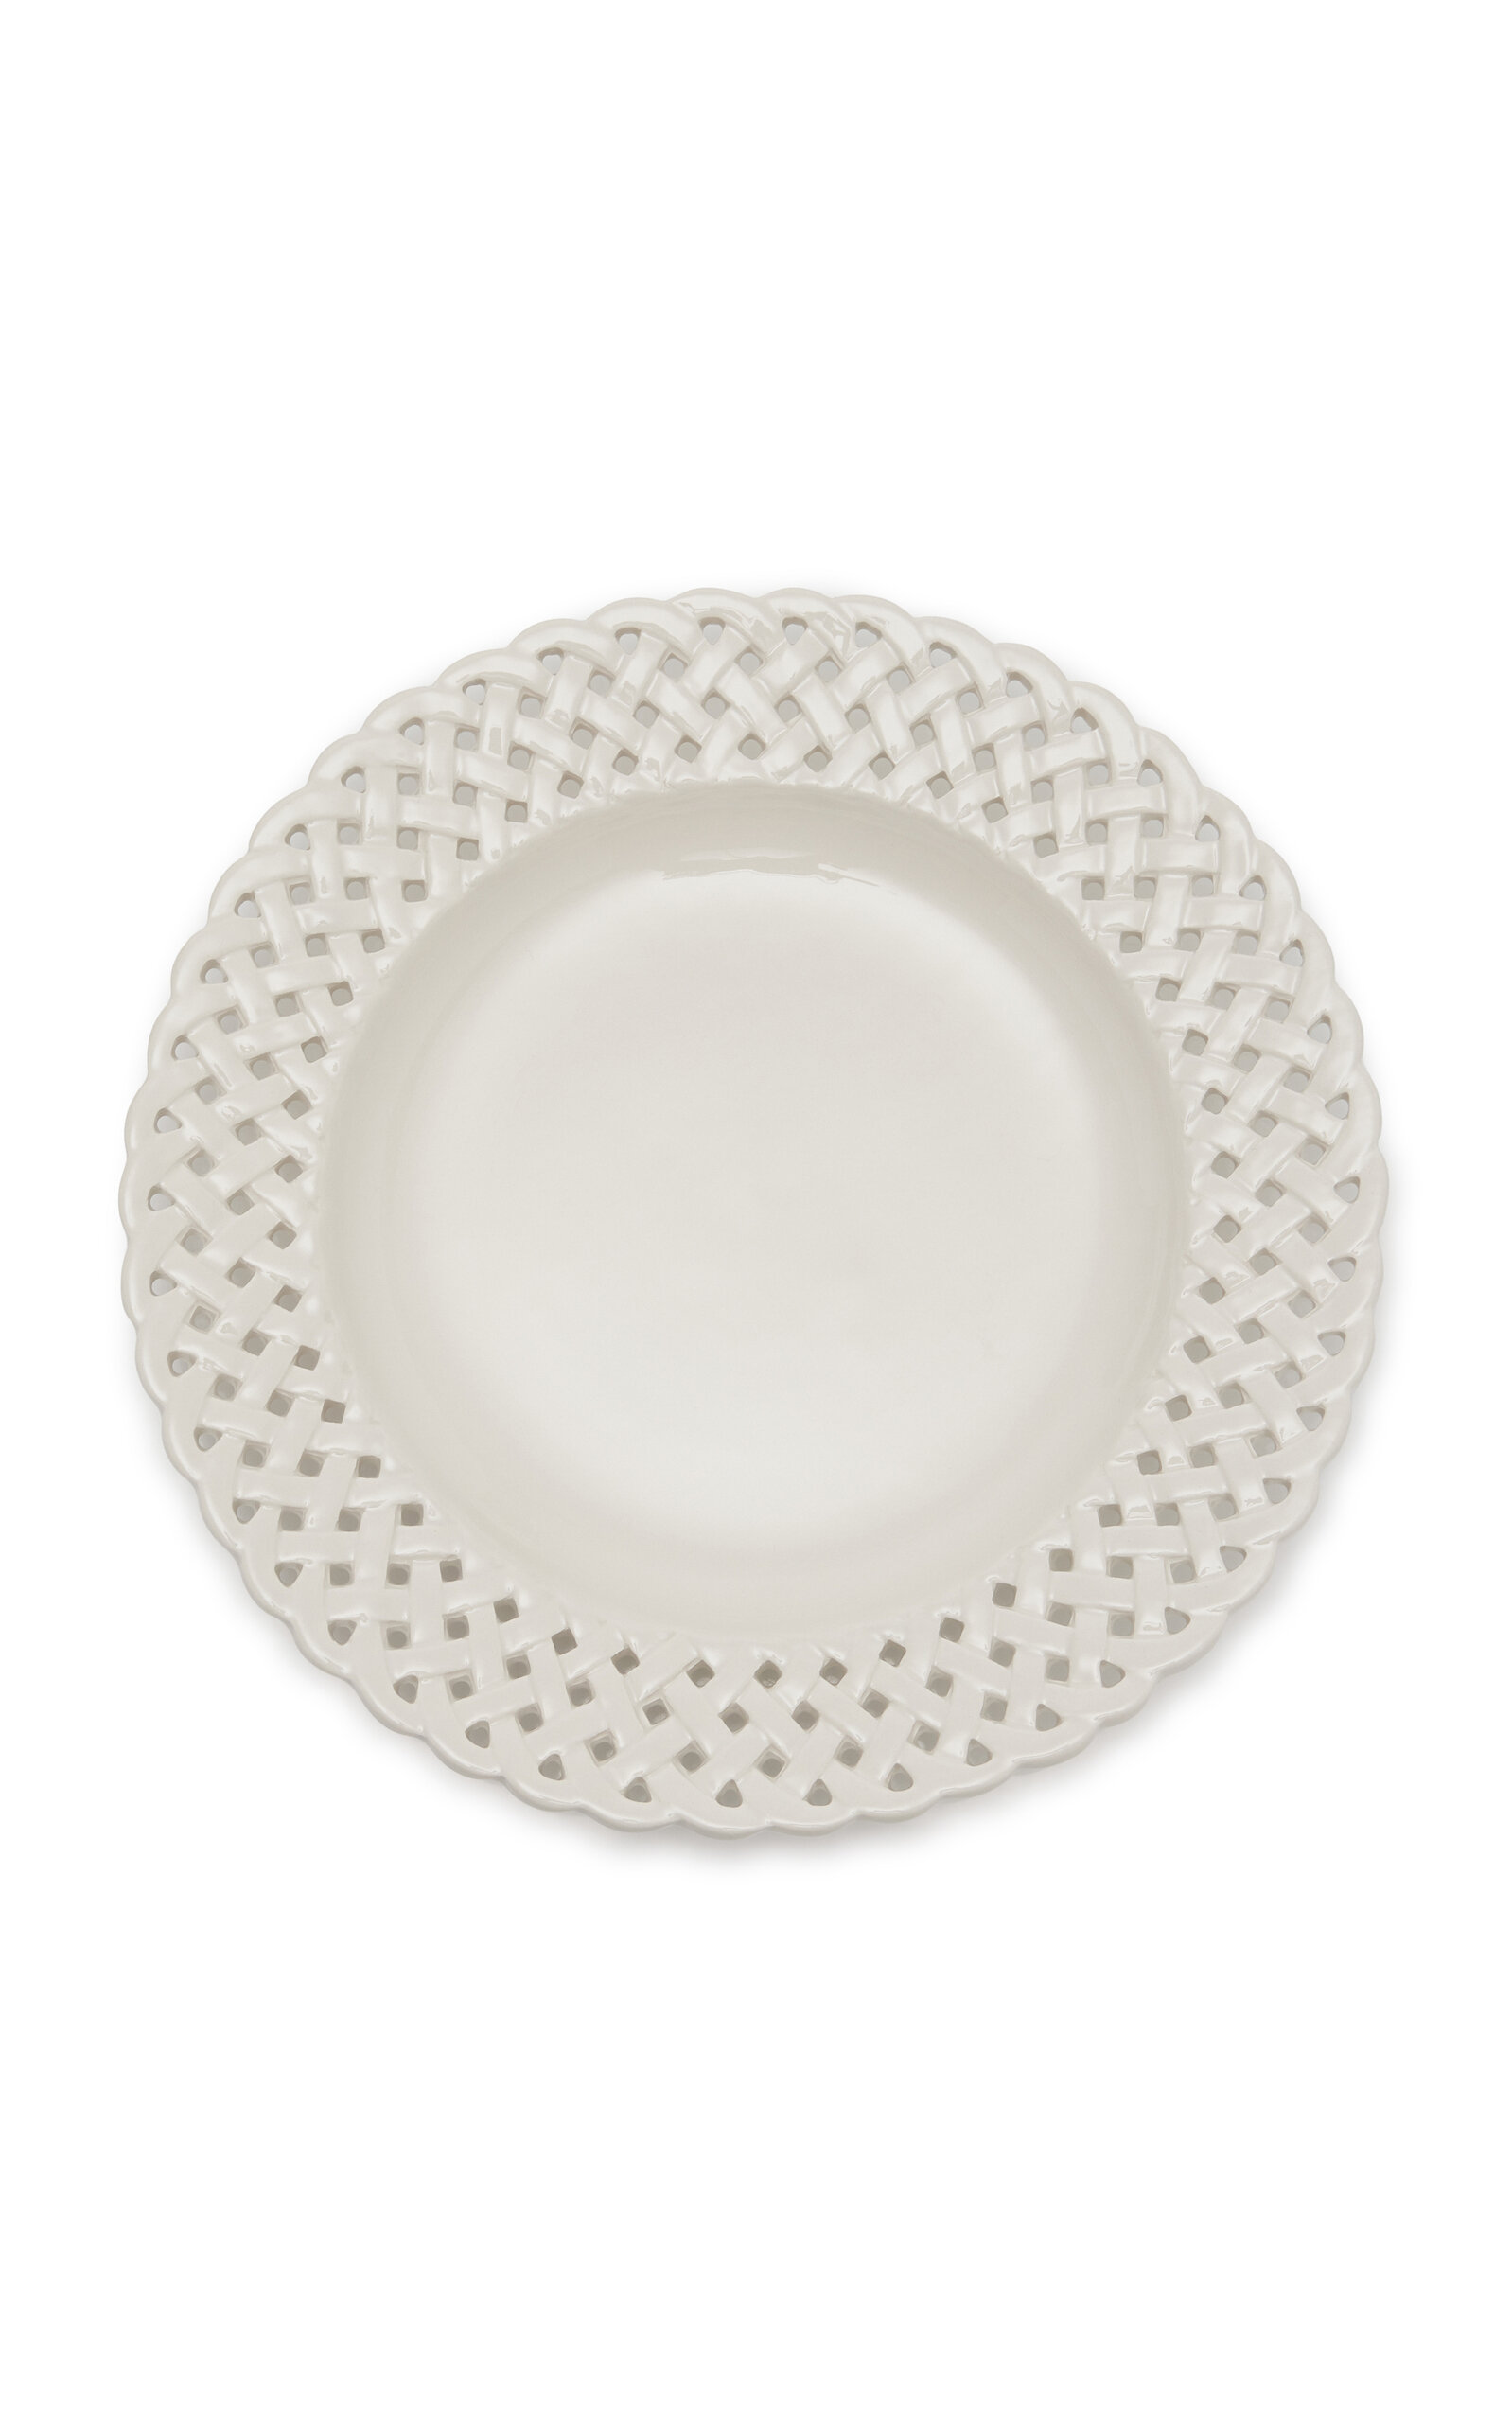 Moda Domus Hopenwork Creamware Dinner Plate In White